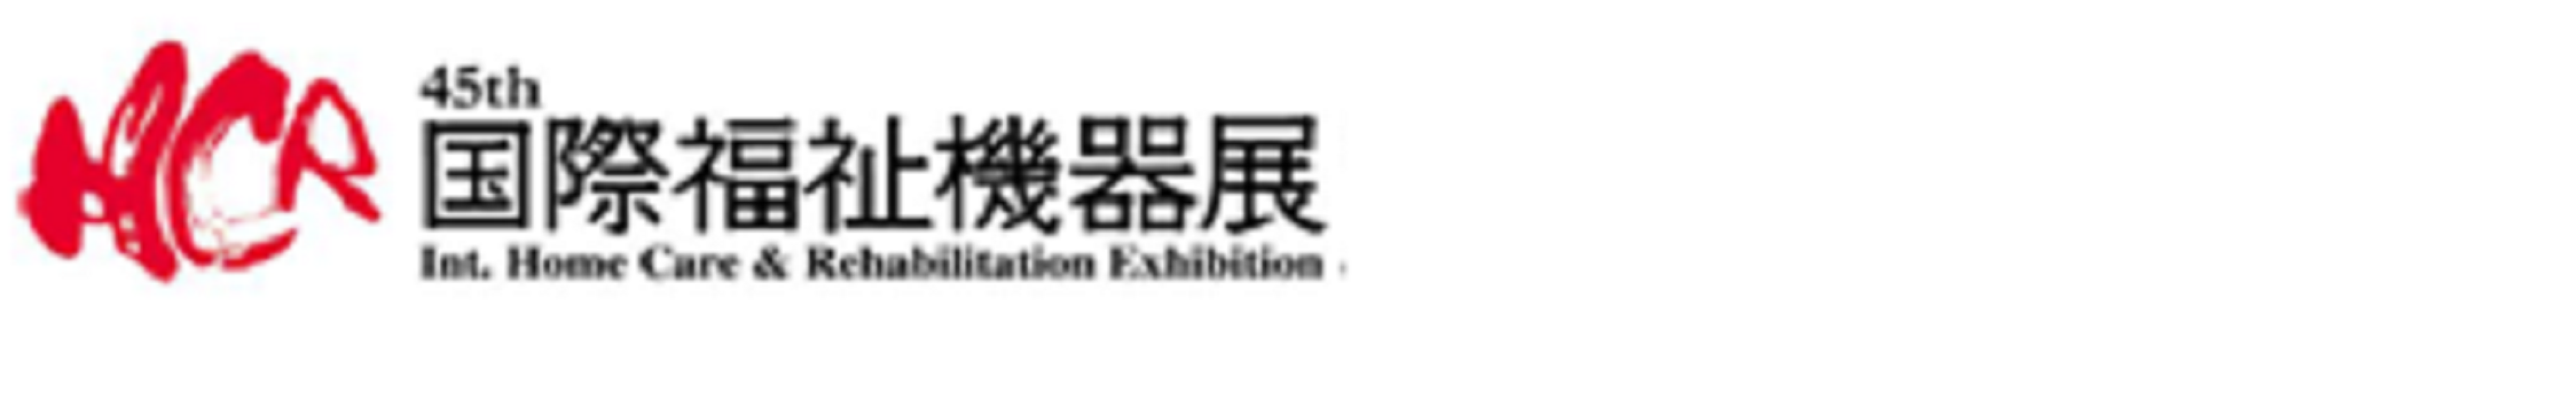 2018日本福祉展览会H.C.R观摩及养老机构考察